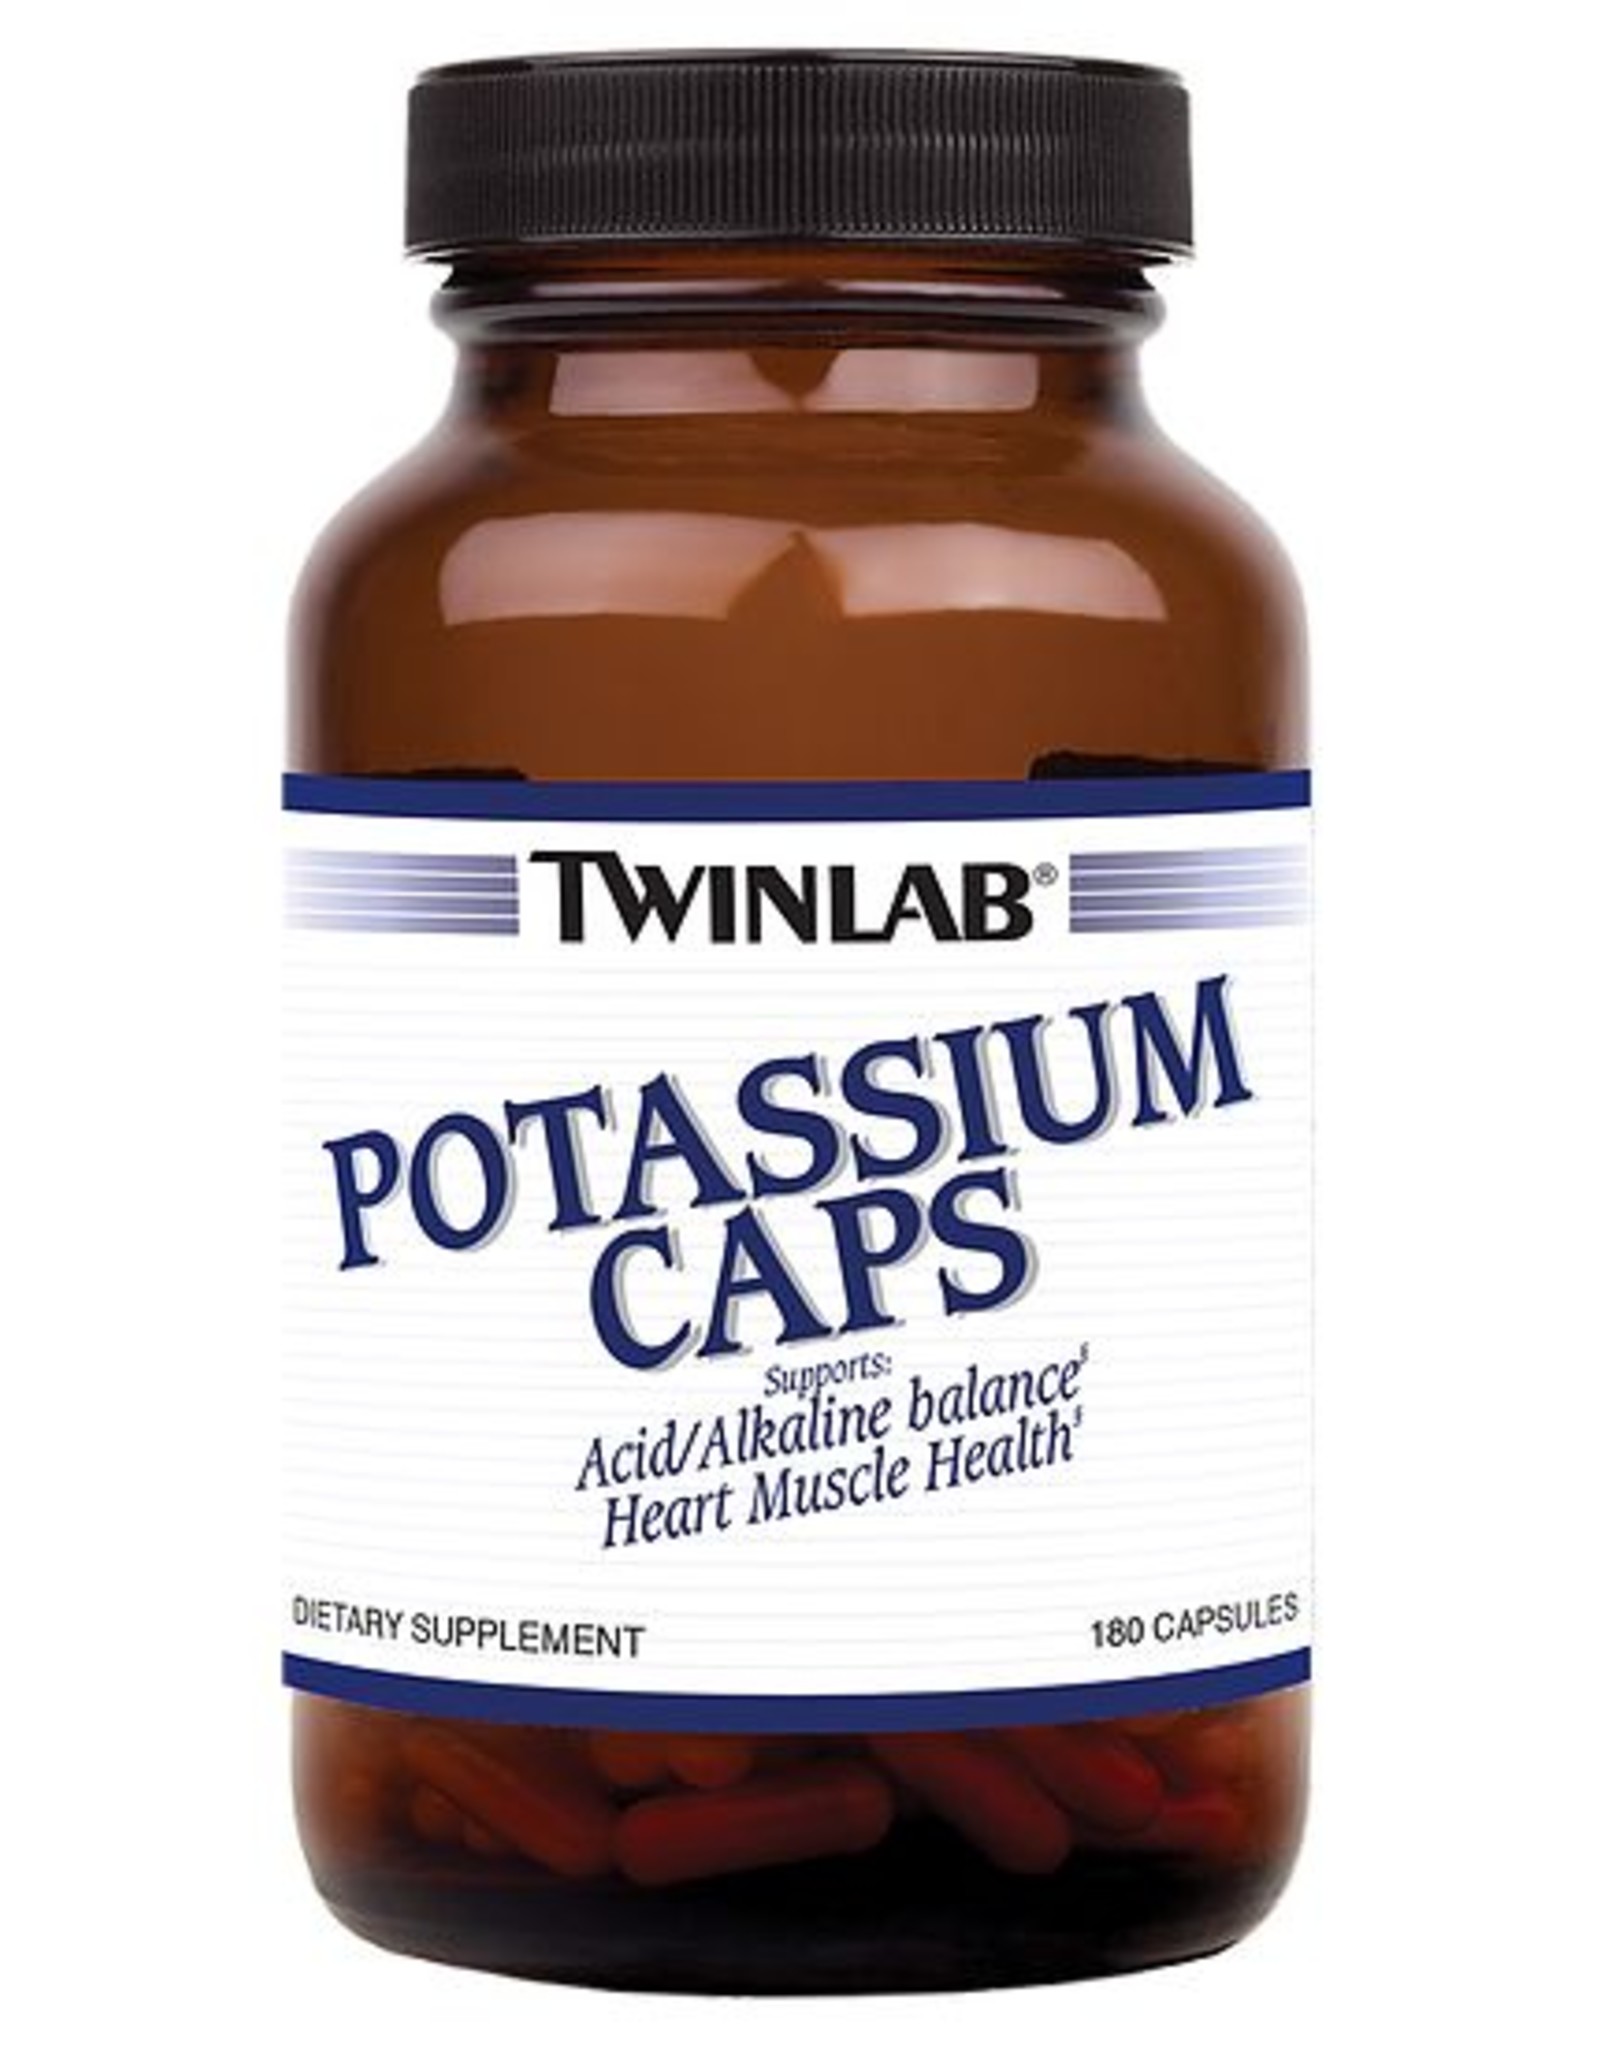 TwinLab Potassium Caps 180 Capsules